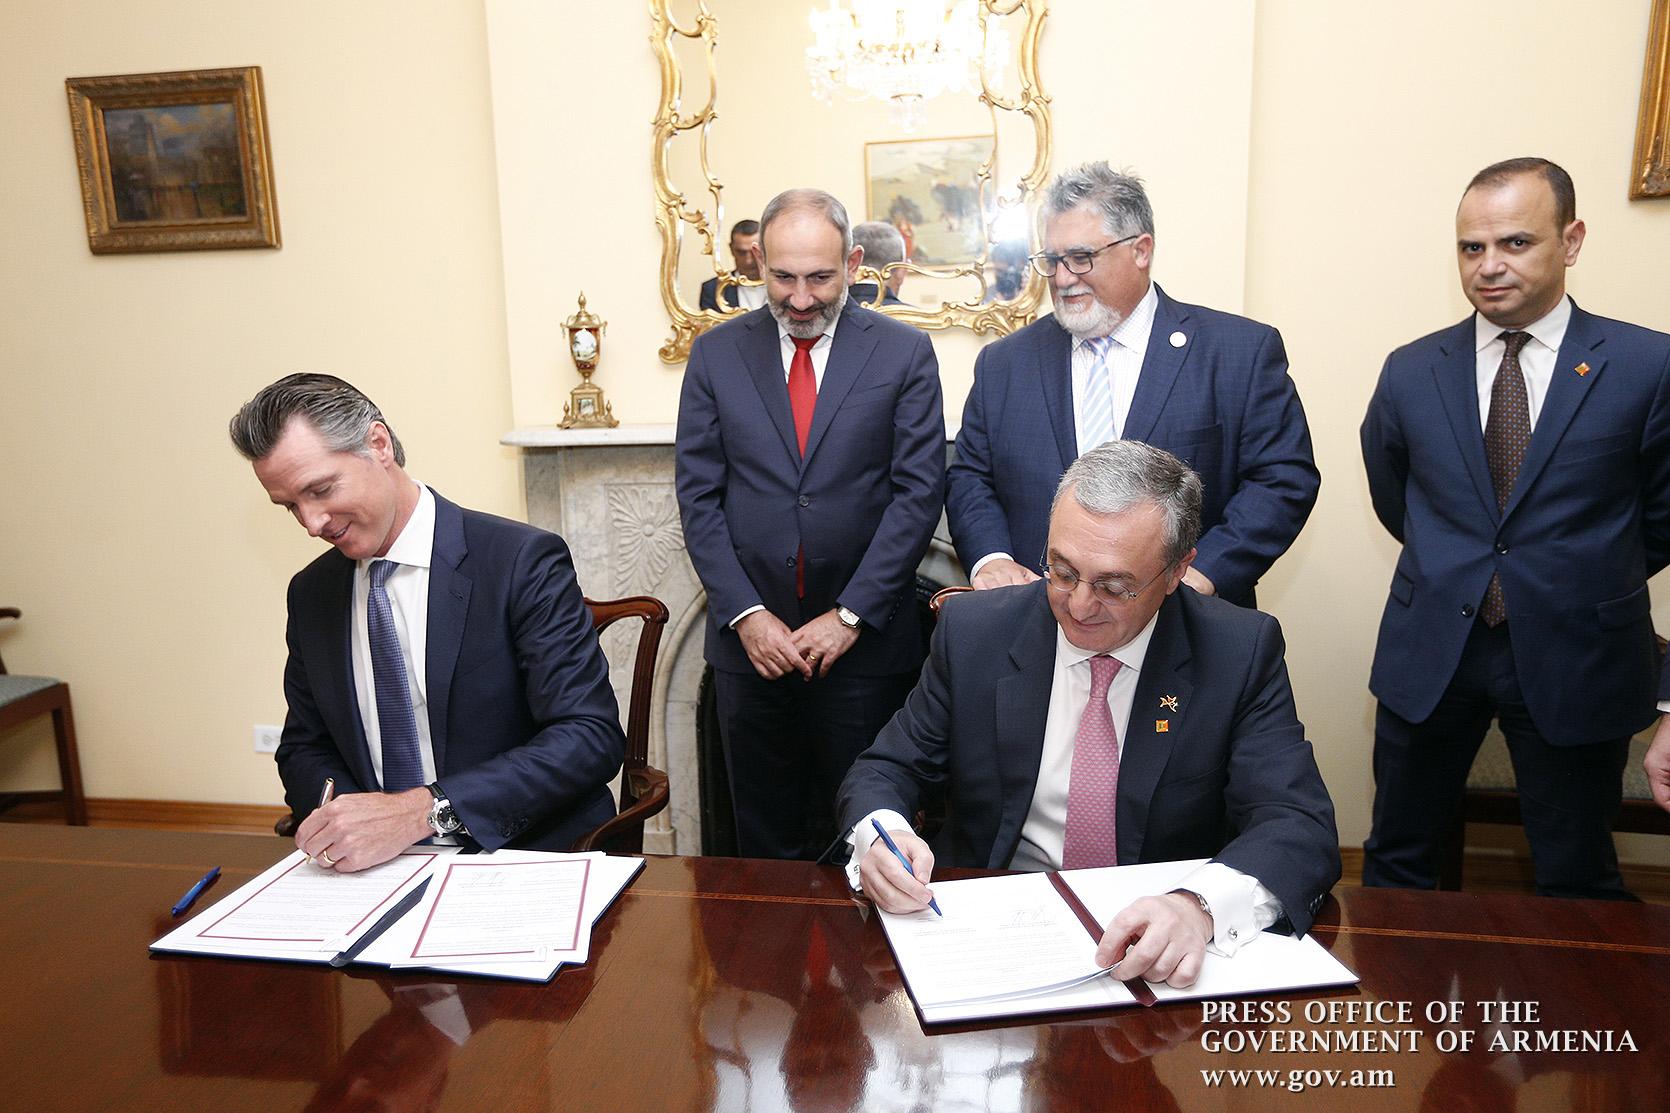 ՀՀ-ի և Կալիֆորնիայի միջև ստորագրվել է շրջանակային համաձայնագիր համագործակցության վերաբերյալ